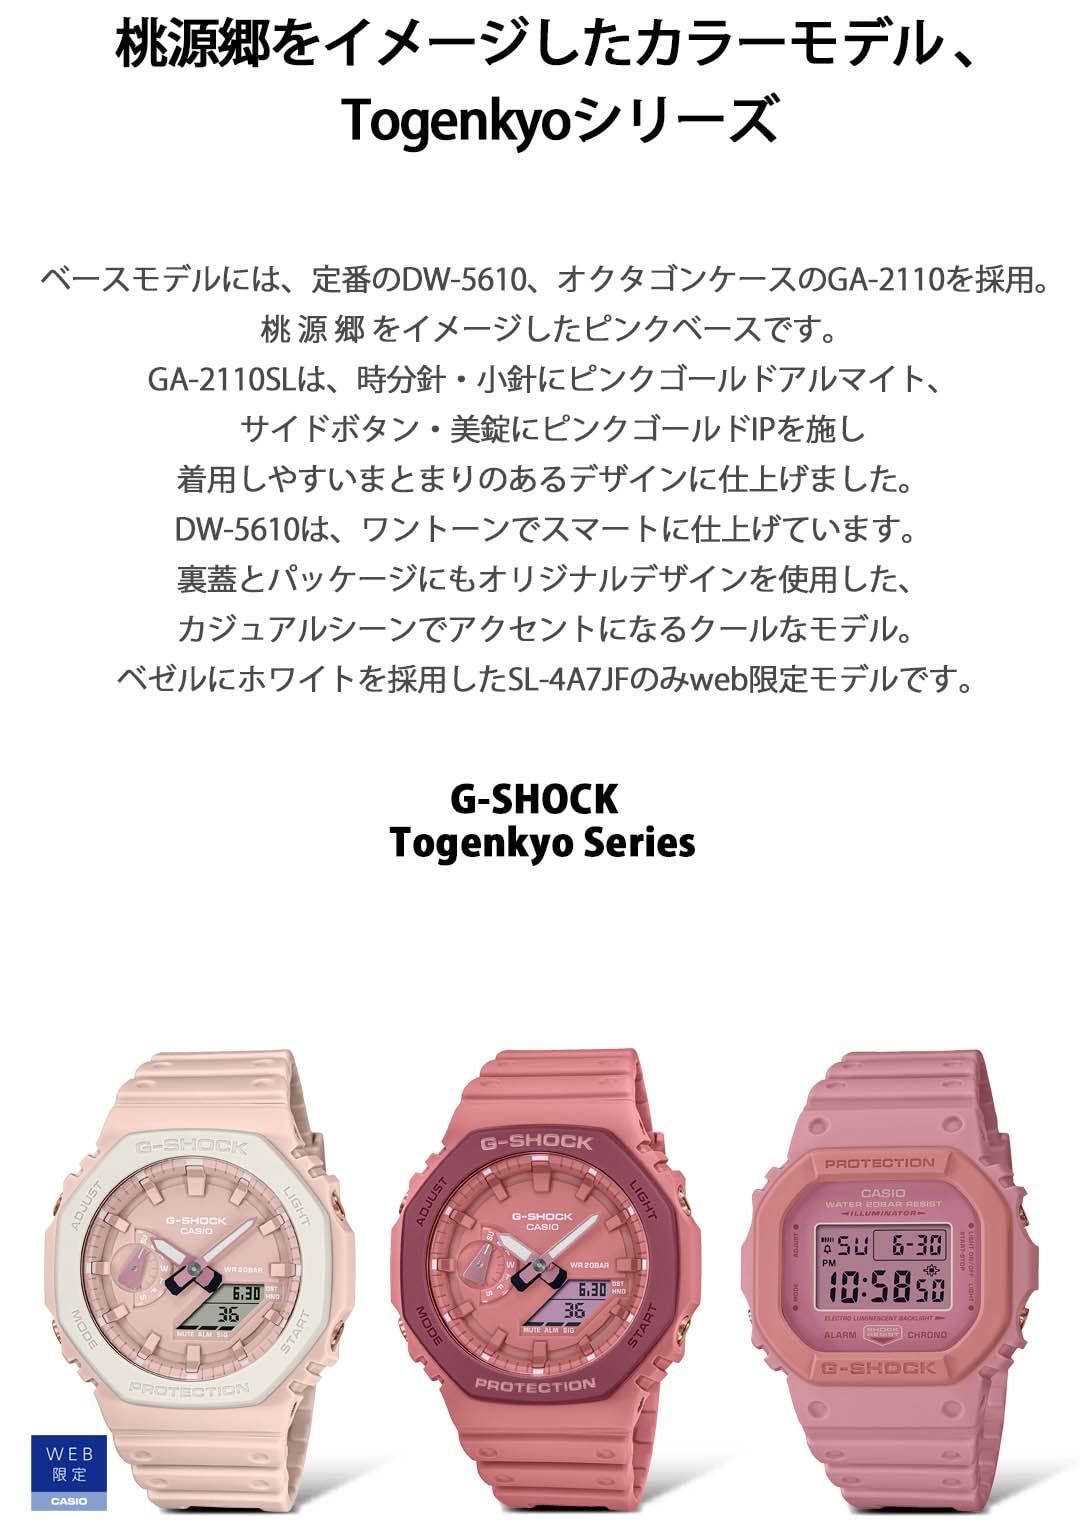 [カシオ] 腕時計 ジーショック GA-2110SL-4A4JR 【国内正規品】 Togenkyo SERIES メンズ ピンク - BanzaiHobby